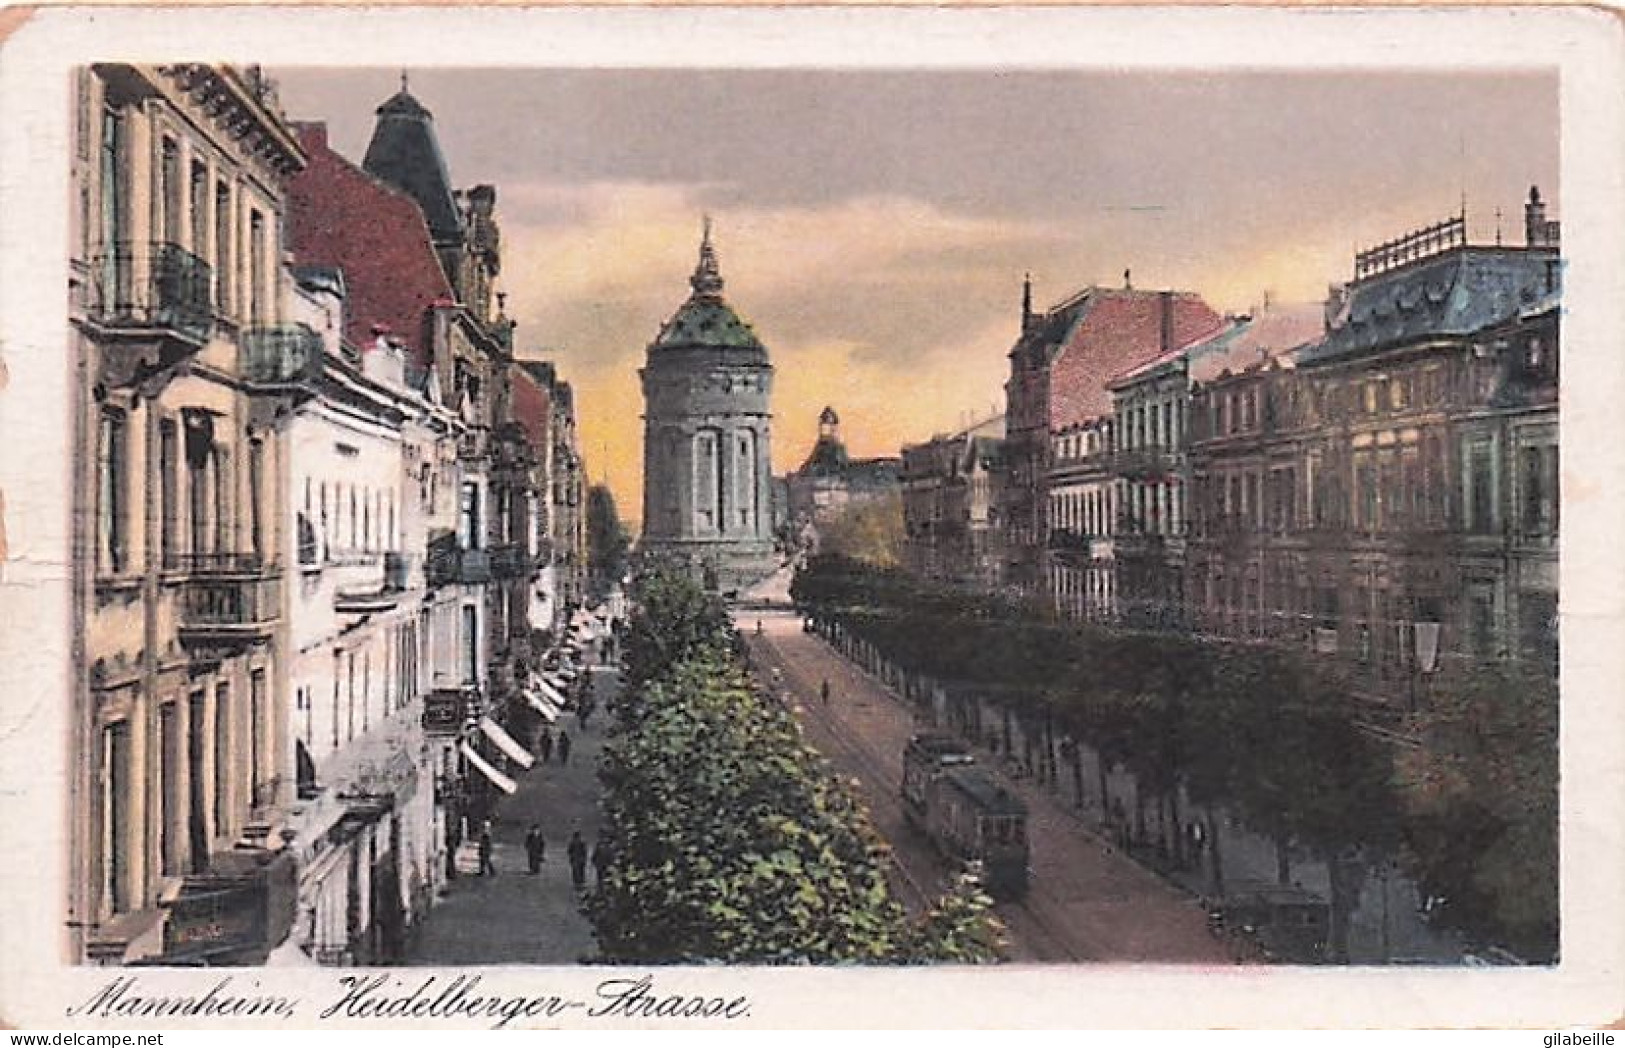  deutschland - MANNHEIM - Lot von 13 Postkarten